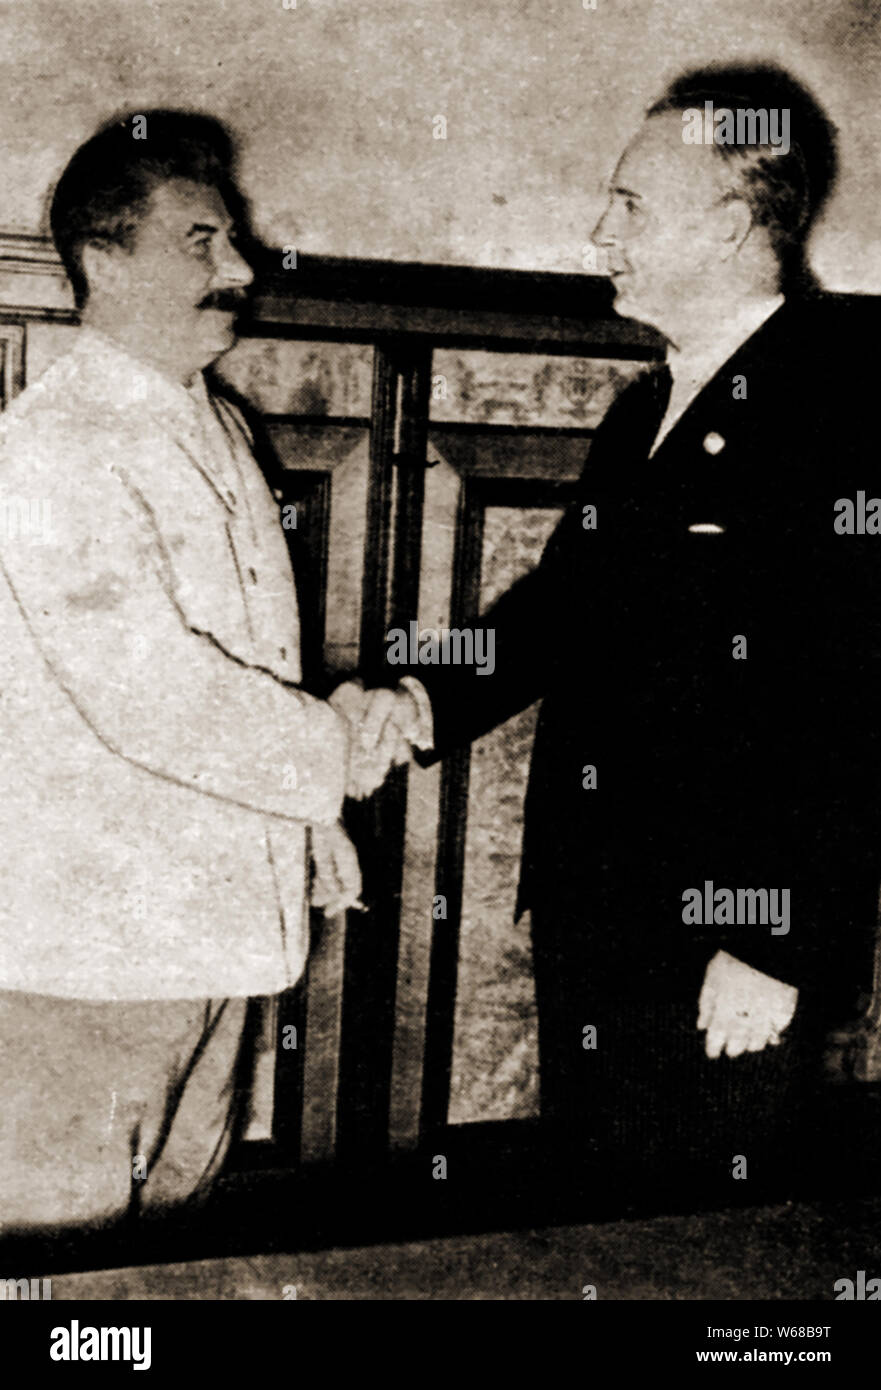 La prima guerra mondiale - Agosto 23 1939 josephStalin & Joachim von Ribbentrop agitare le mani sul tedesco - patto sovietica ( La Molotov- patto Ribbentrop,ufficialmente conosciuta come il Trattato di non aggressione fra la Germania e l'Unione delle Repubbliche socialiste sovietiche) Foto Stock